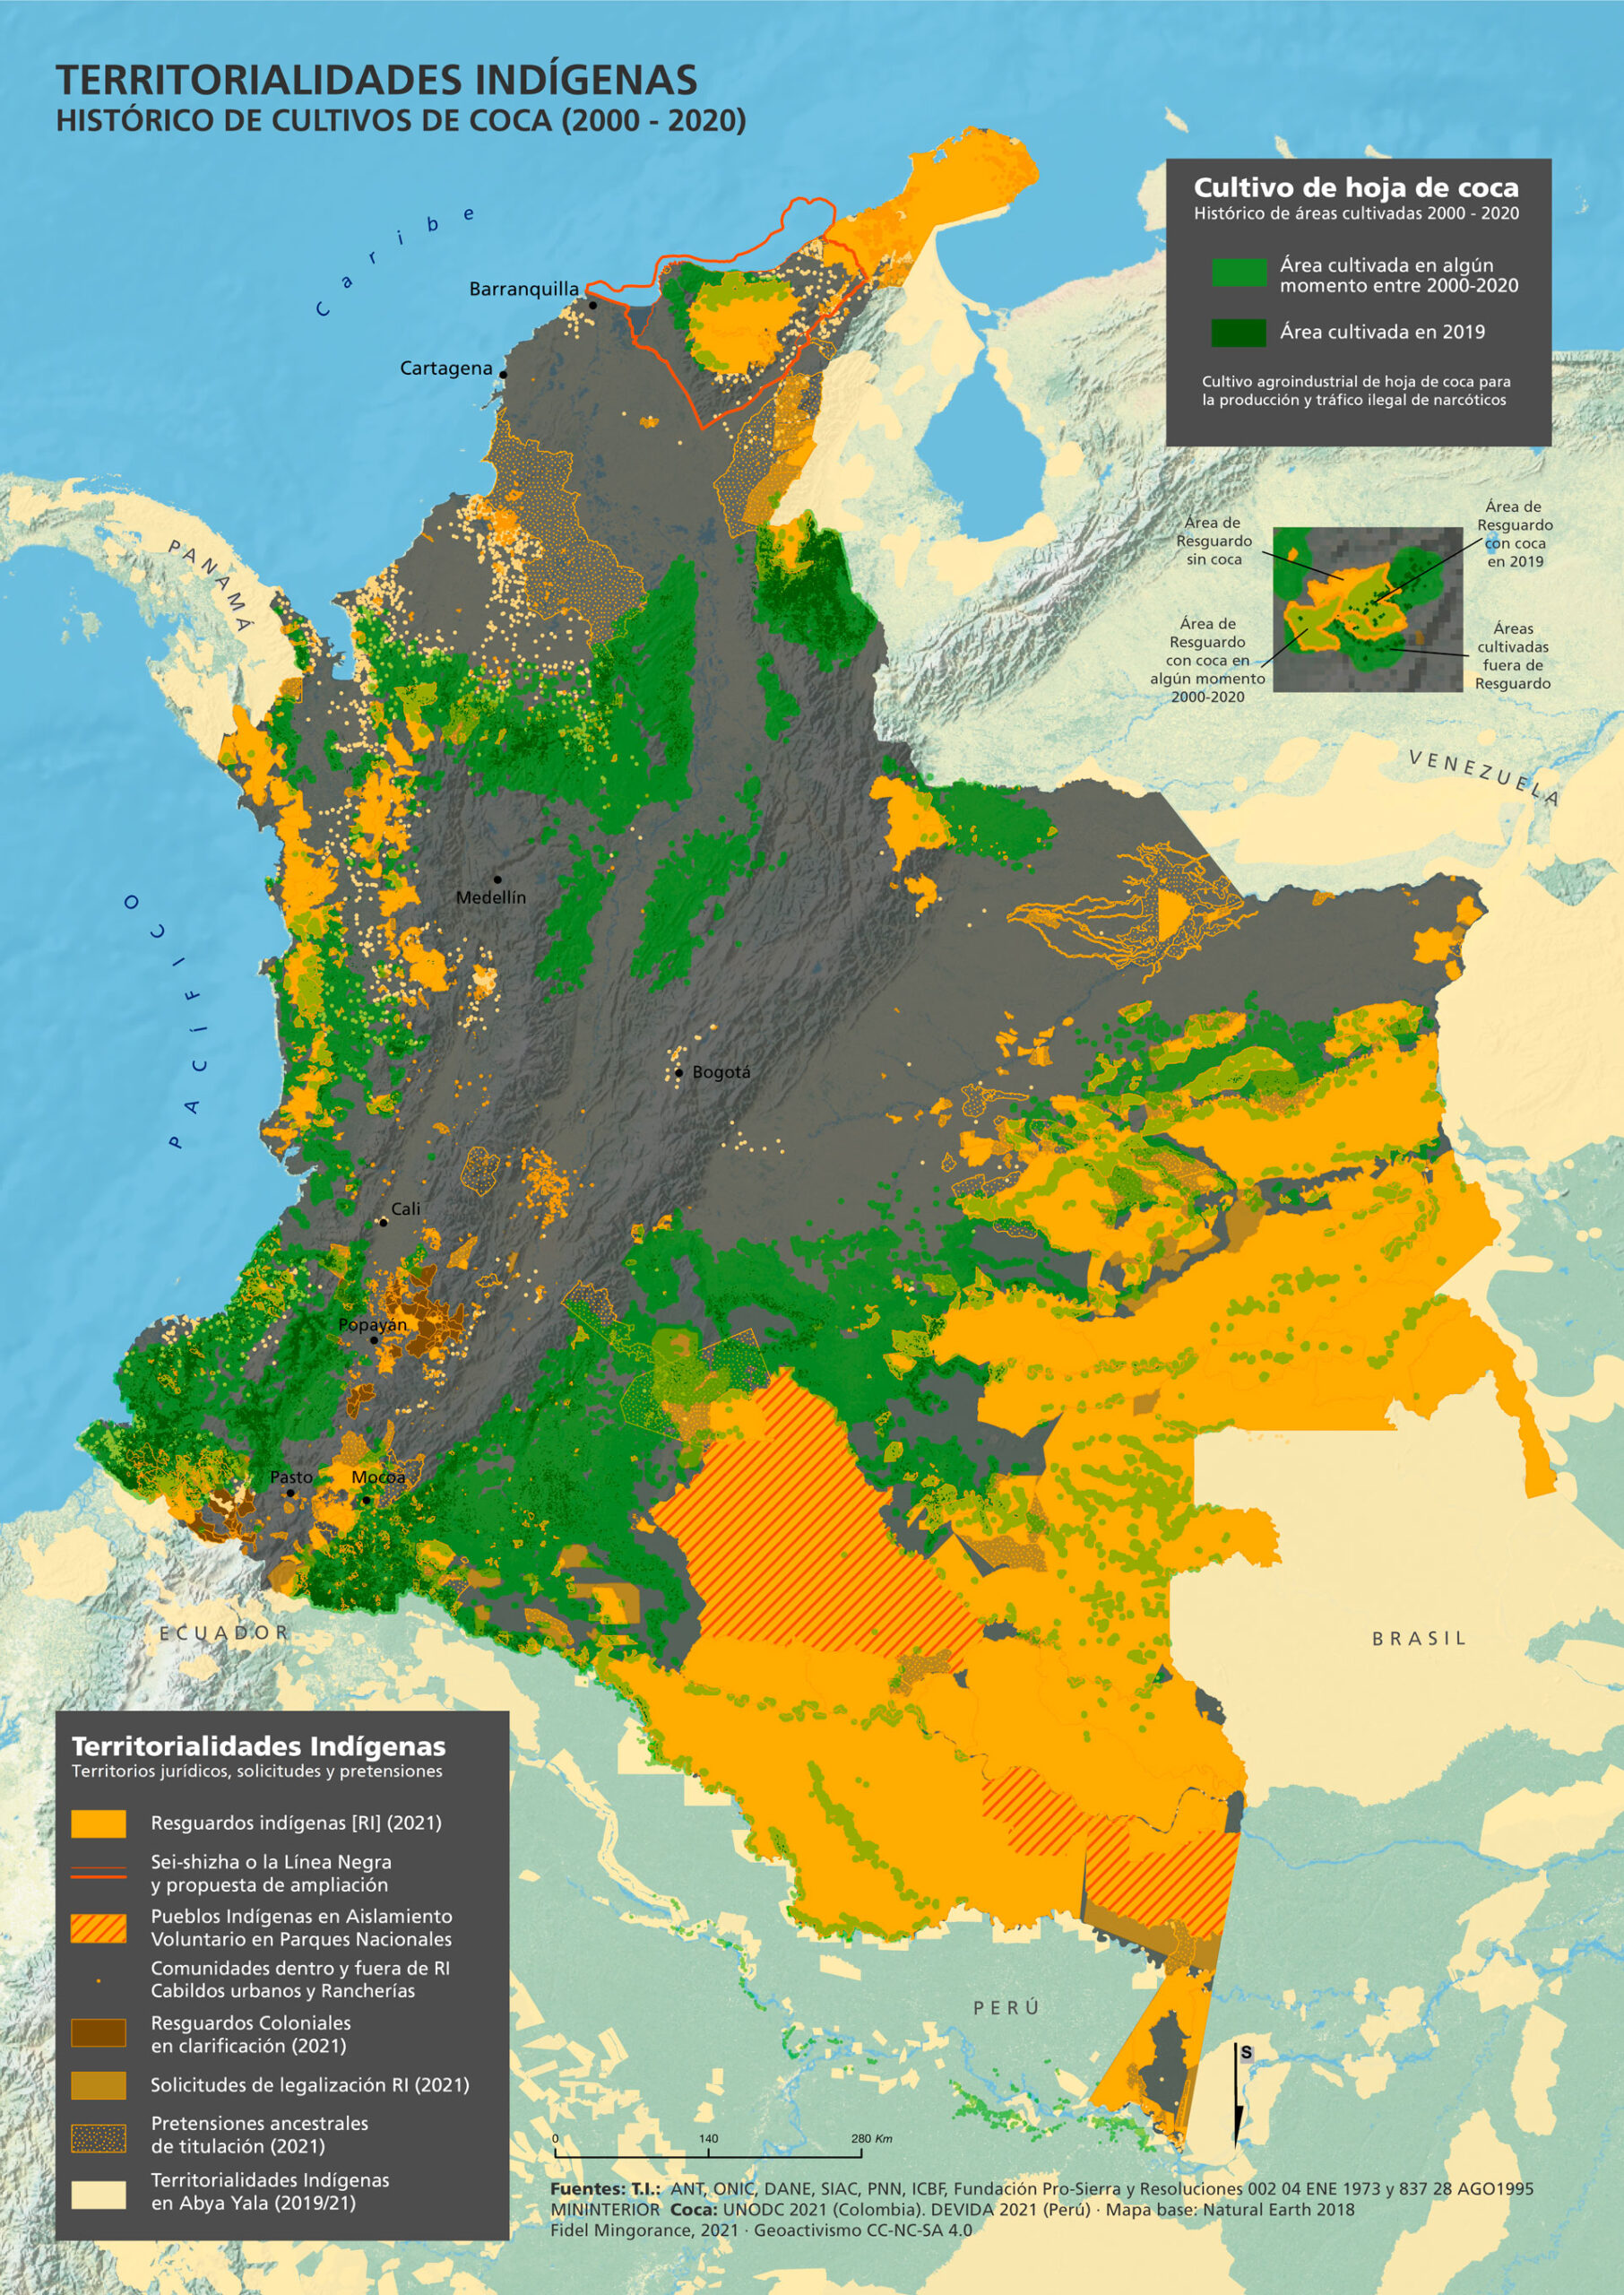 Territorialidades indígenas y cultivos de coca para el narcotráfico (2000-2020)